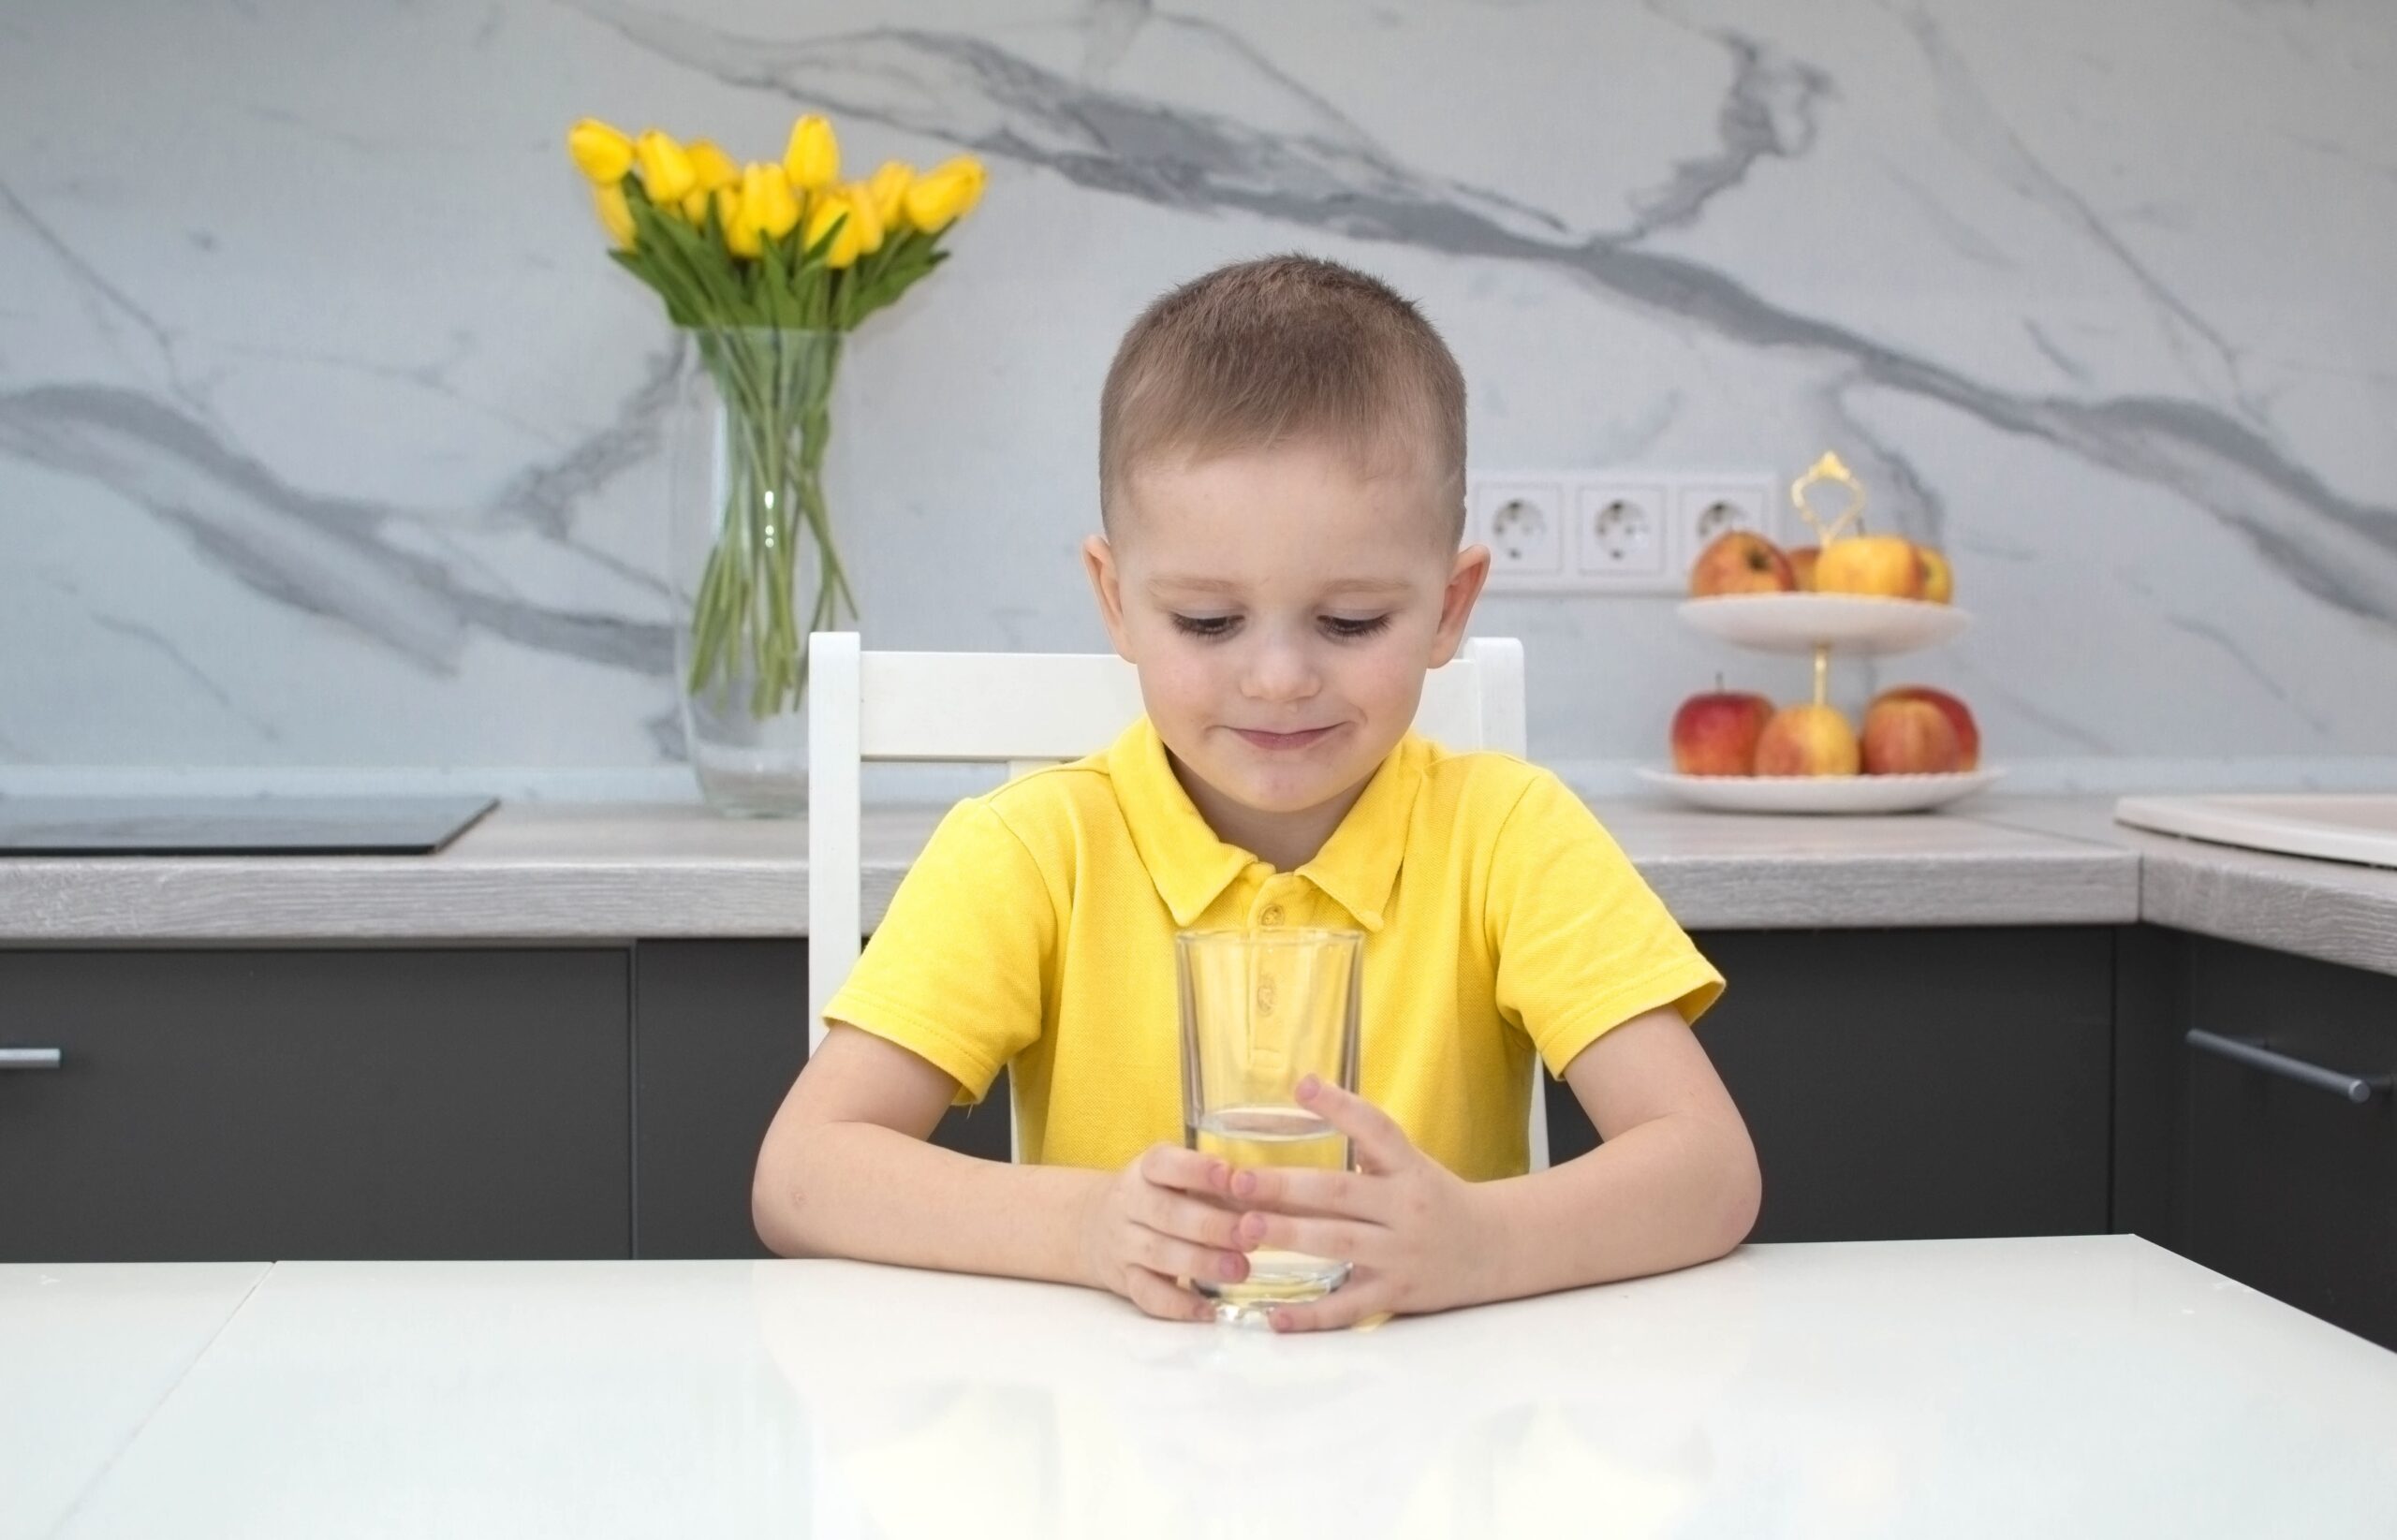 Sarı tişörtlü çocuk evdeki mutfakta su içiyor. Çocuk elinde bir bardak temiz su tutuyor ve gülümsüyor.